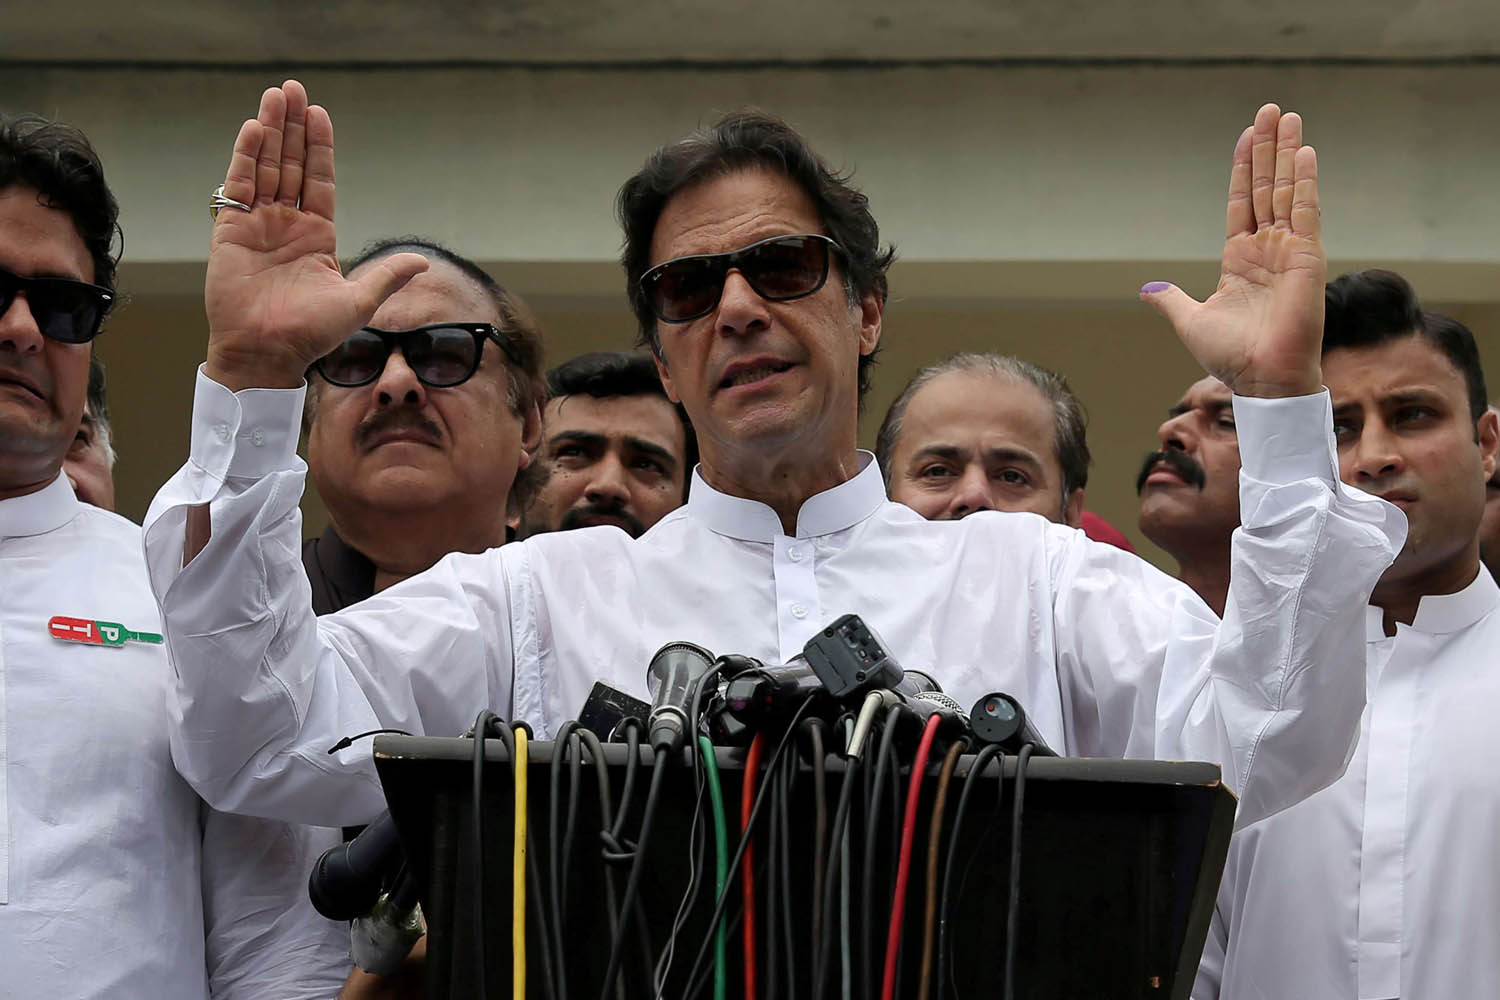 عمران خان يتحدث في حشد من مناصريه بعد تصويته في الانتخابات الأخيرة